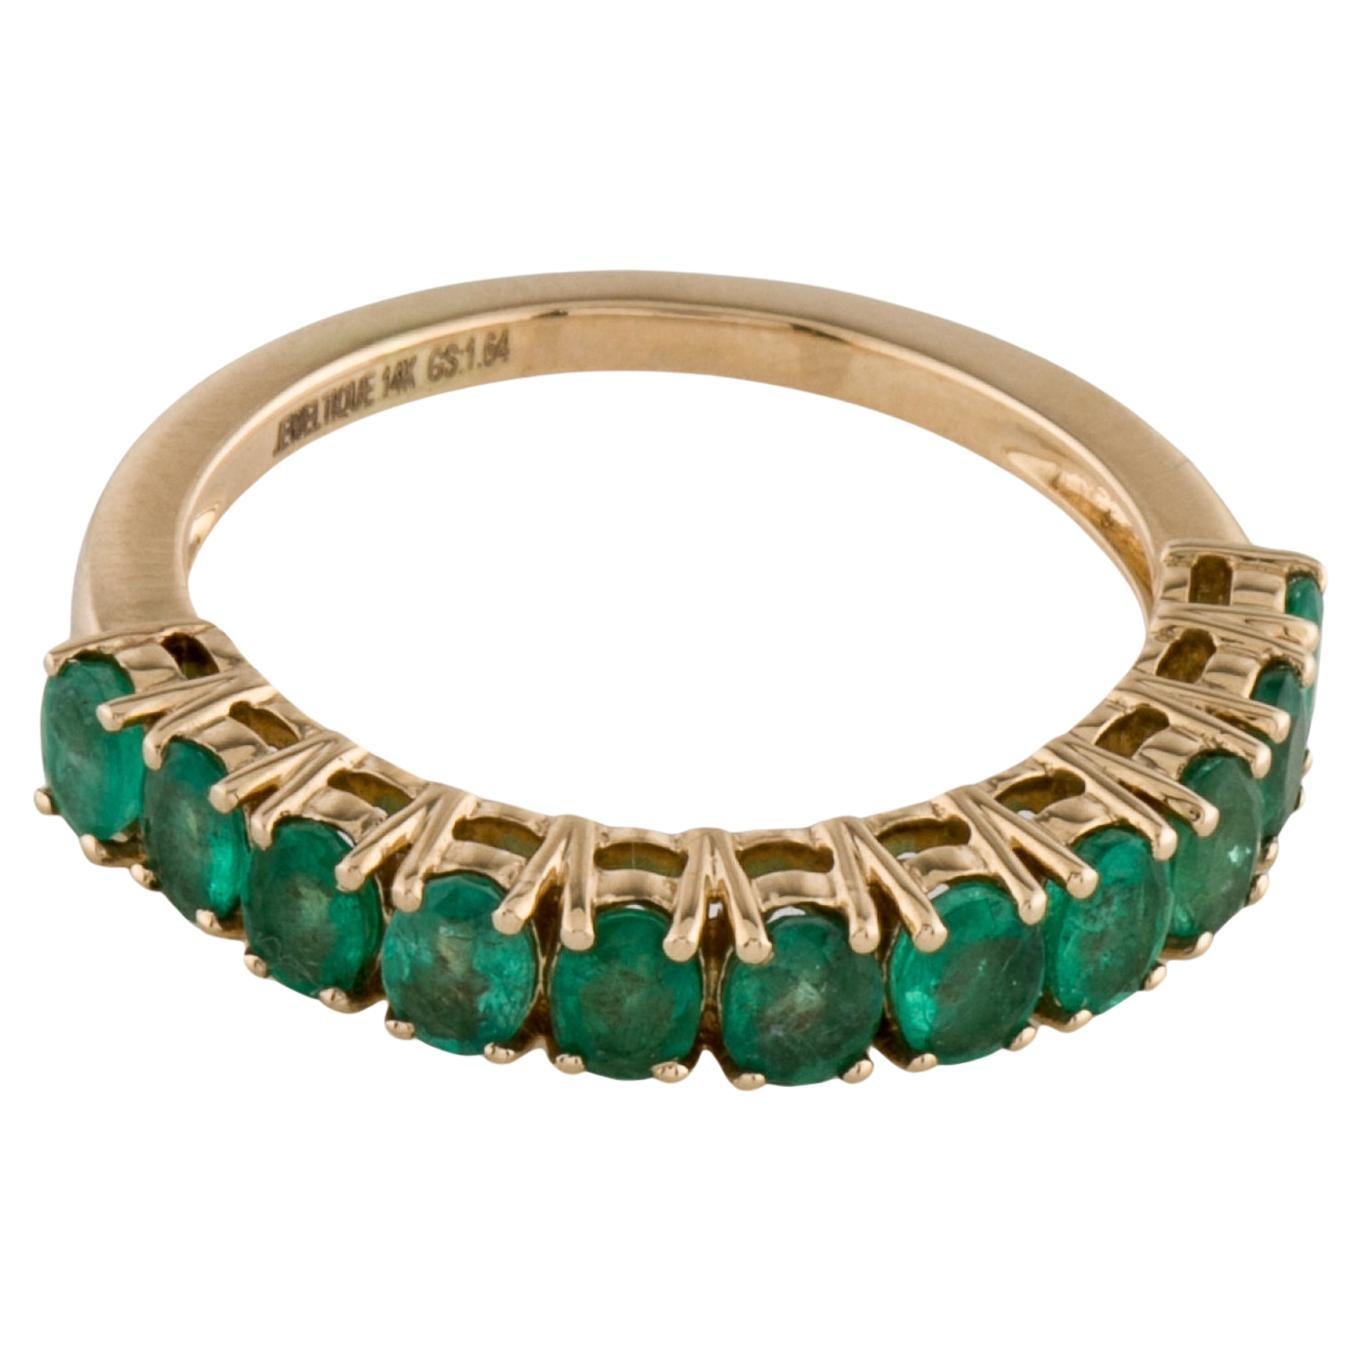 Exquisiter 14K Smaragd-Ring mit Smaragd - Größe 8,75 - Luxuriöser grüner Edelsteinschmuck